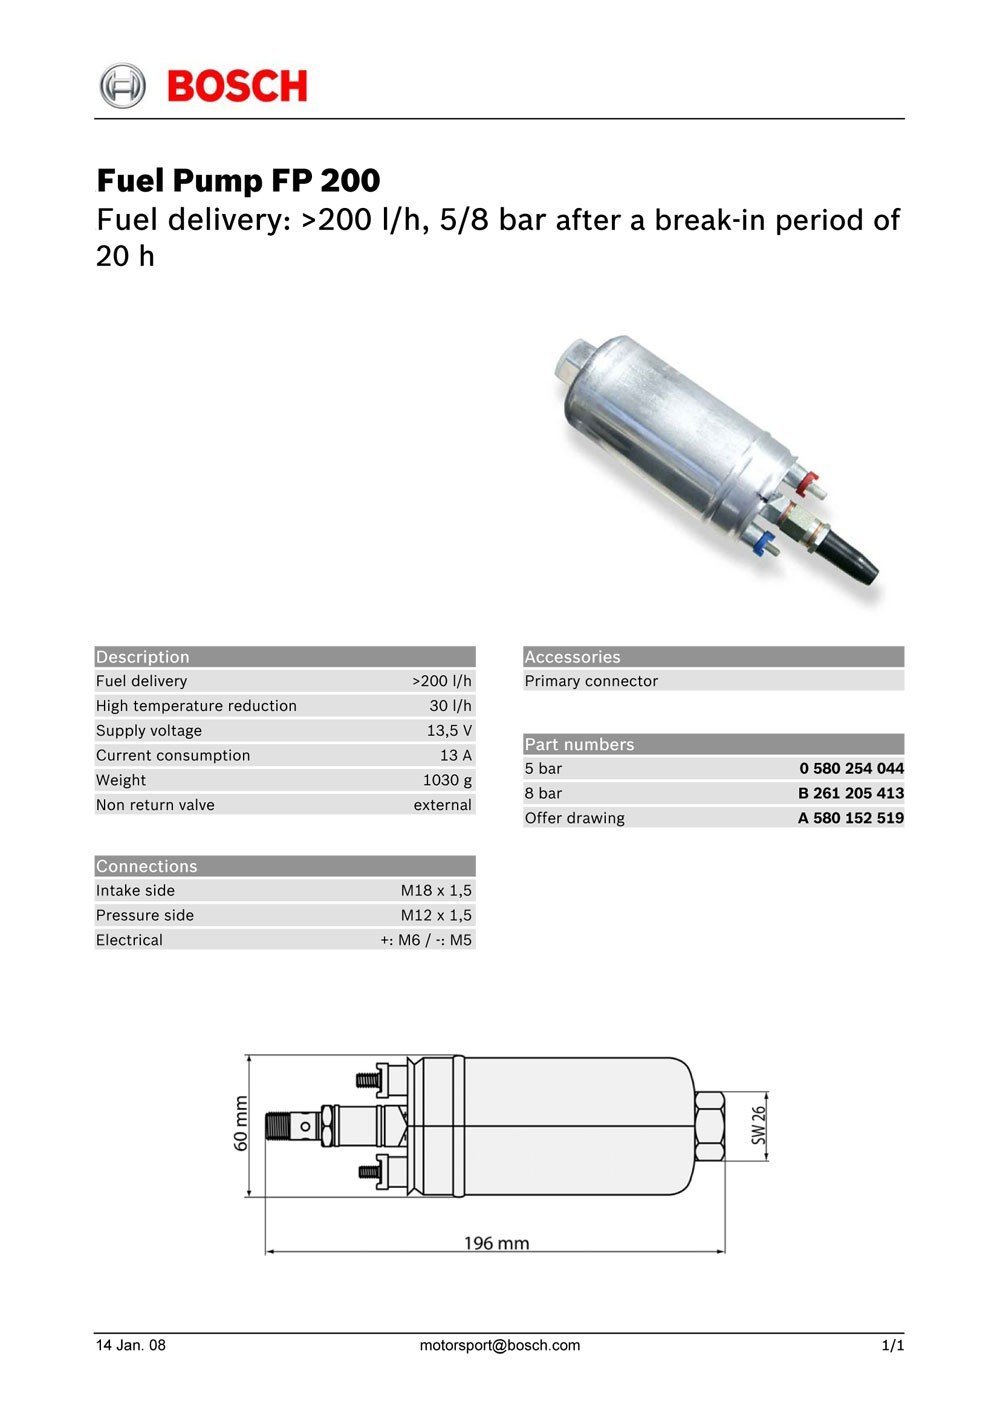 Топливный насос Bosch 0580254044 до 360л.ч